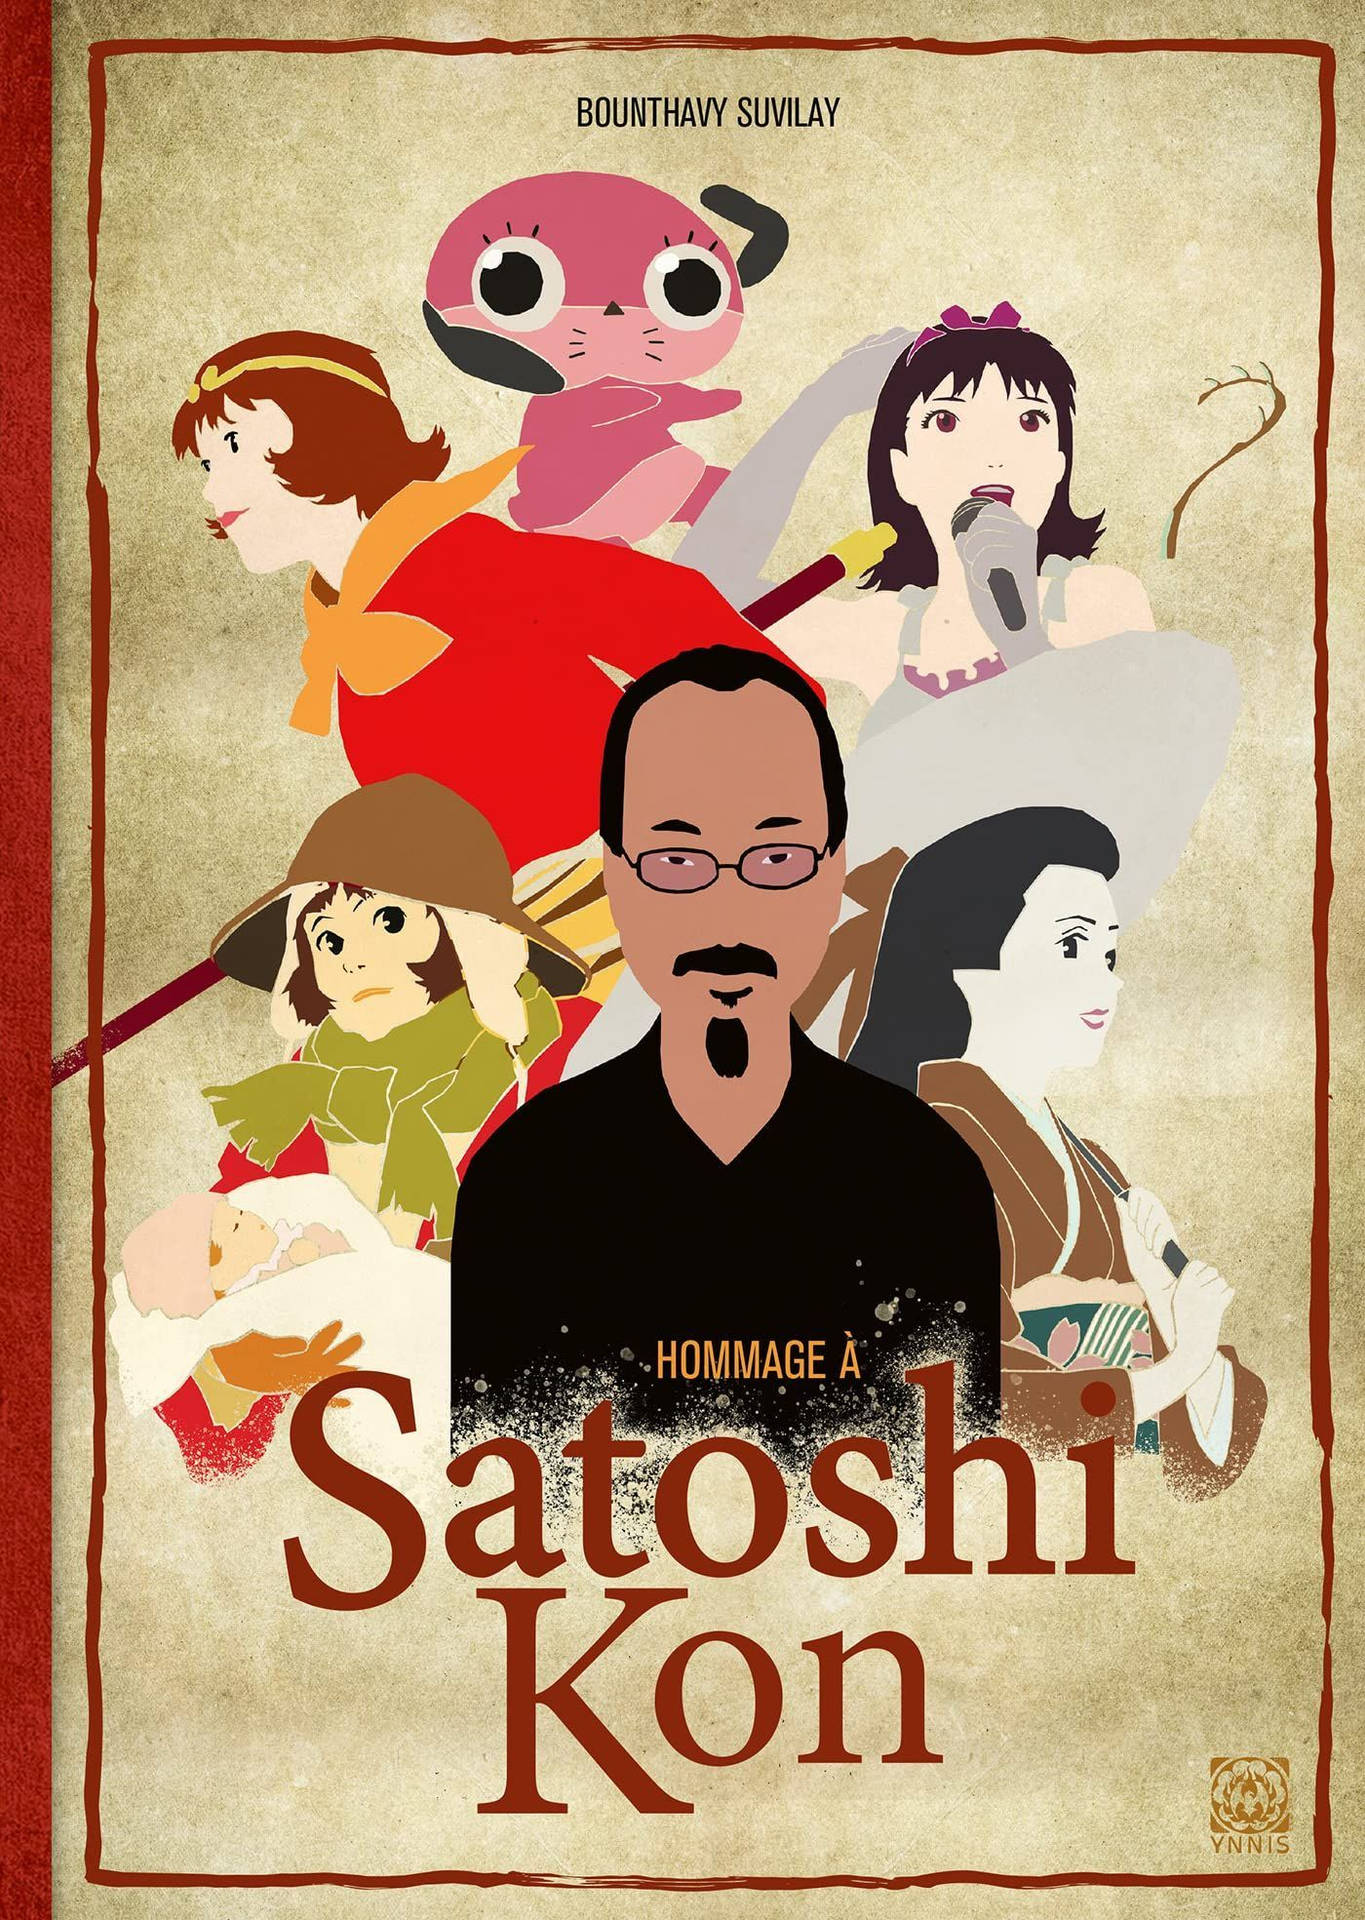 Hommage Of Satoshi Kon Background